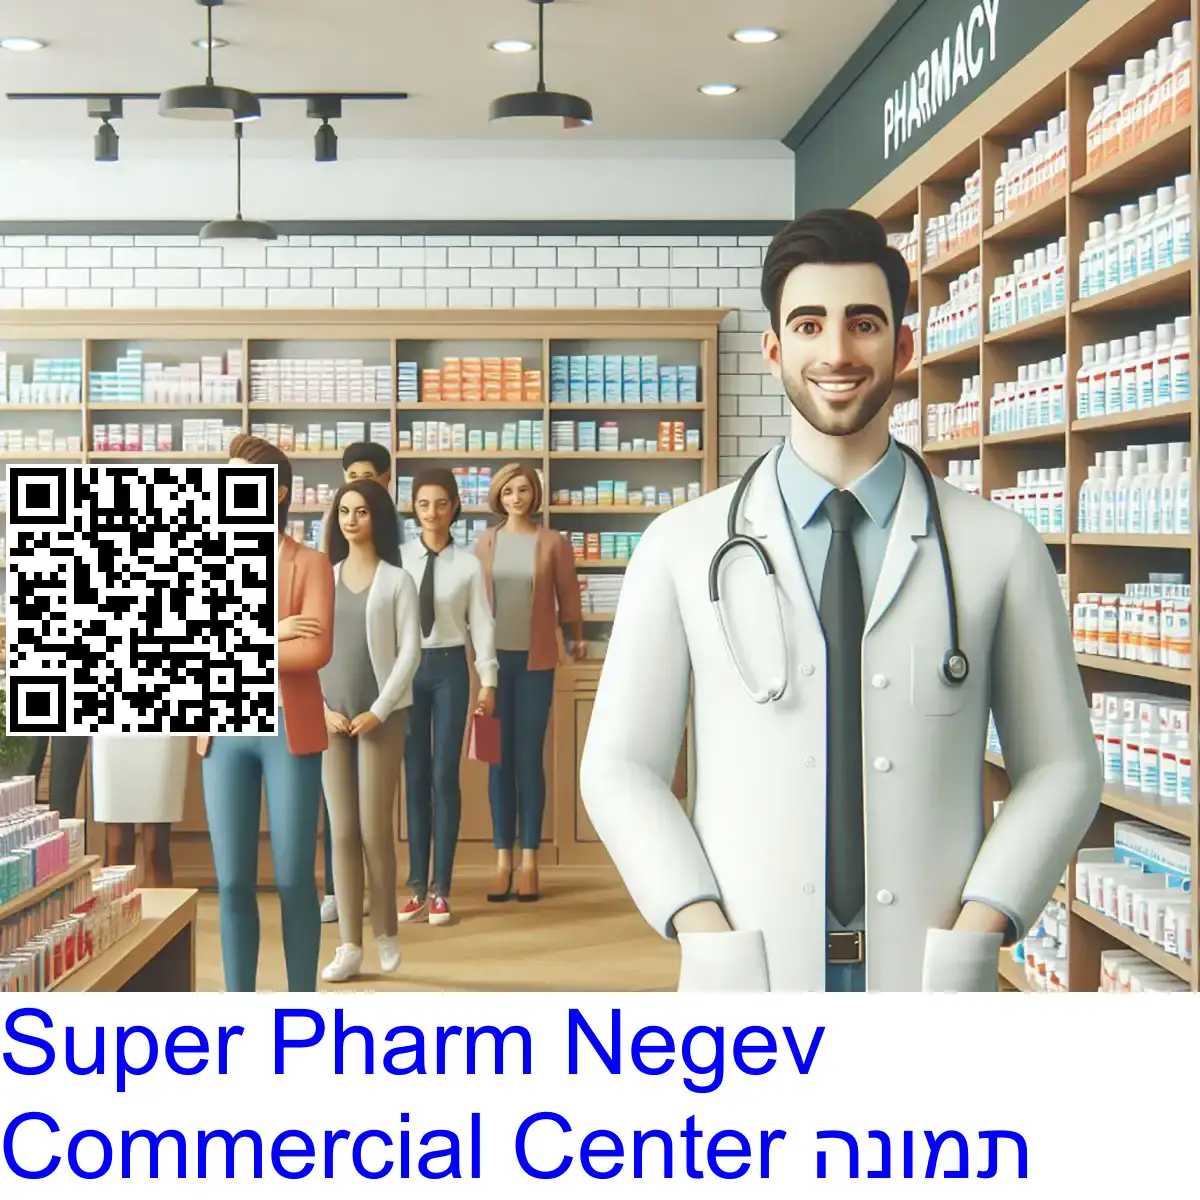 Super Pharm Negev Commercial Center